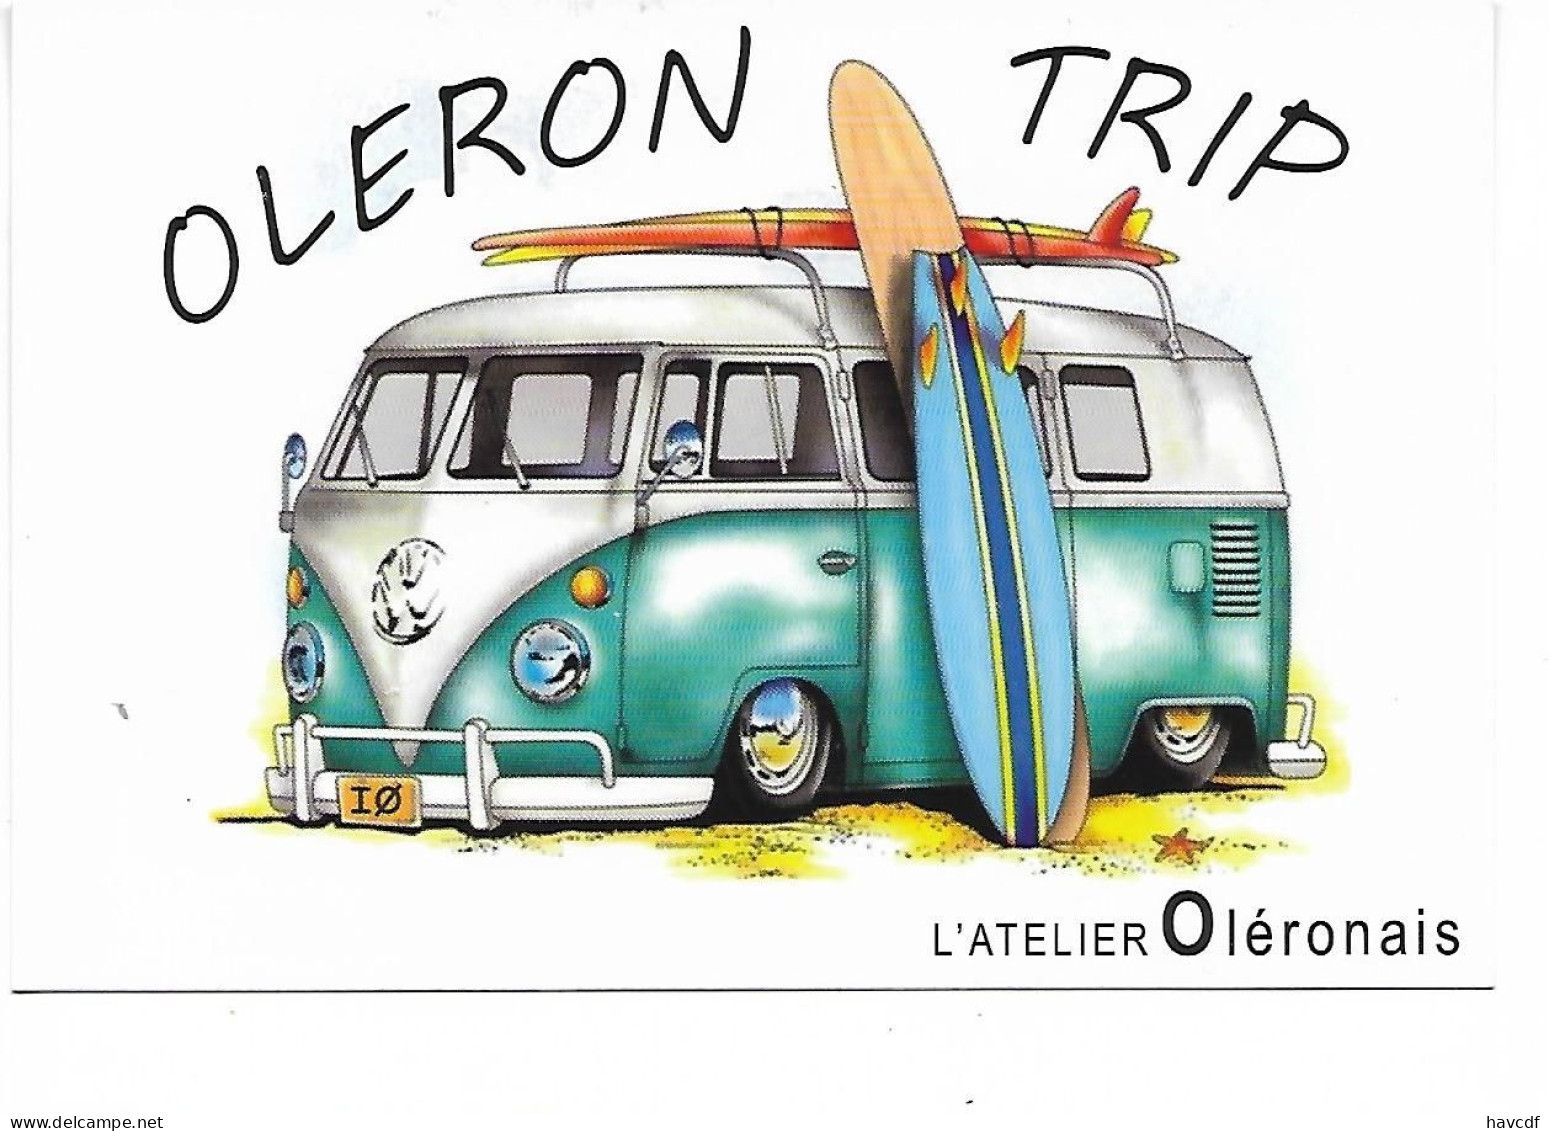 CPM - édit. L'Atelier Oléronais - OLERON TRIP - Combi Volkswagen, Surf - PKW